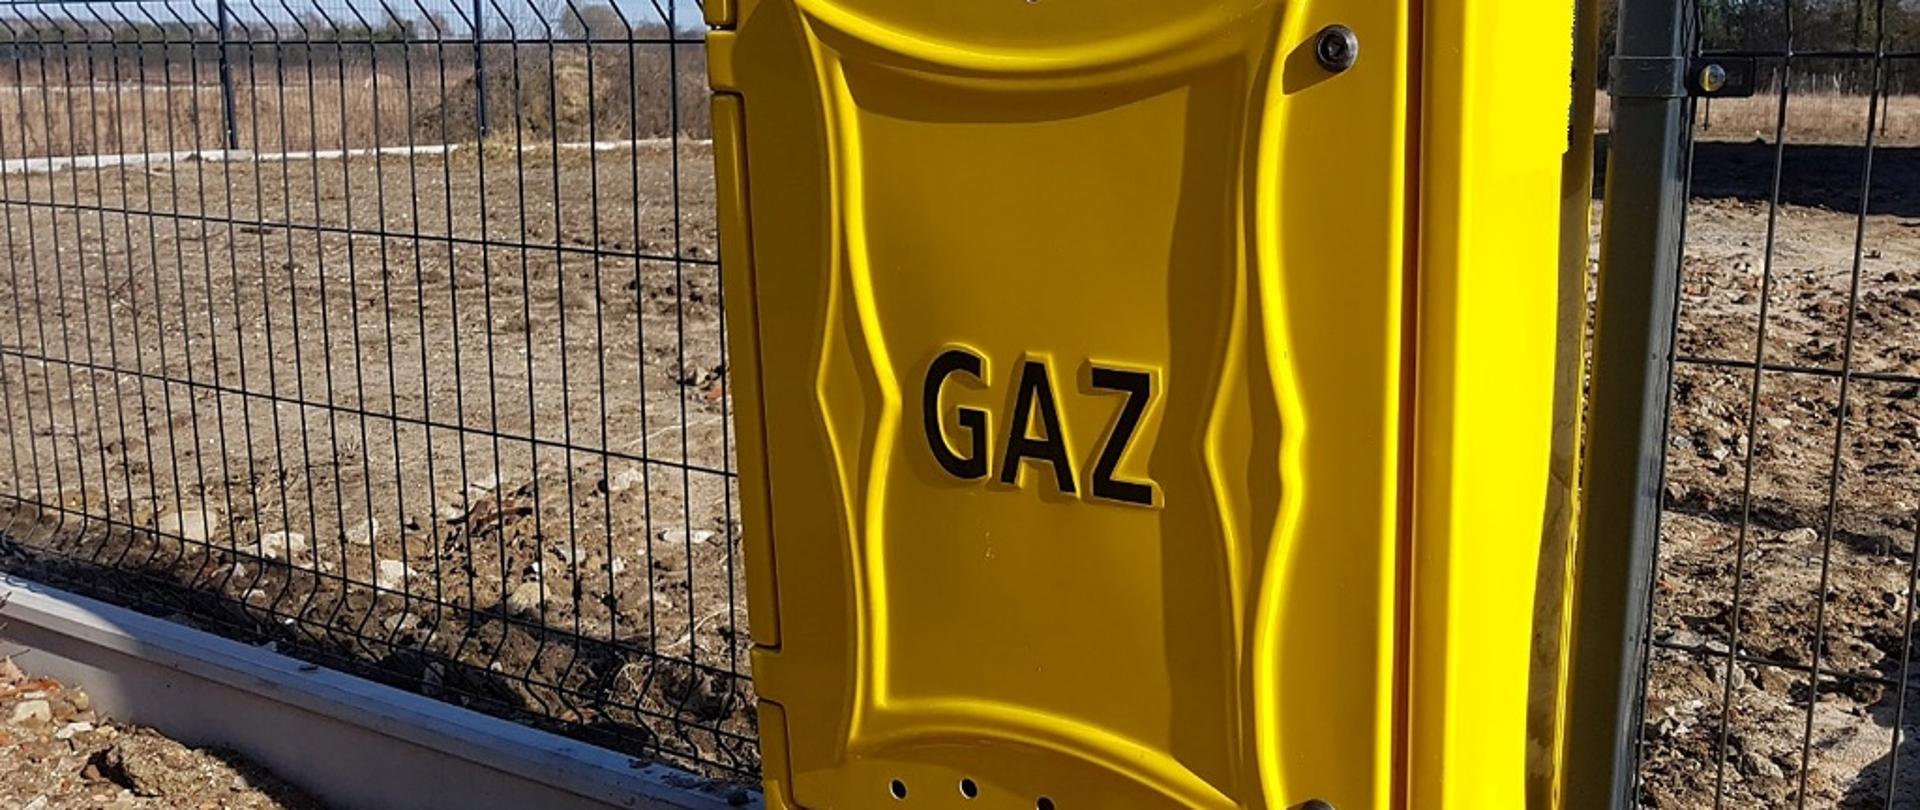 Zdjęcie przedstawia skrzynkę gazową w kolorze żółtym zamocowaną w panelu ogrodzeniowym, na skrzynce napis gaz w kolorze czarnym